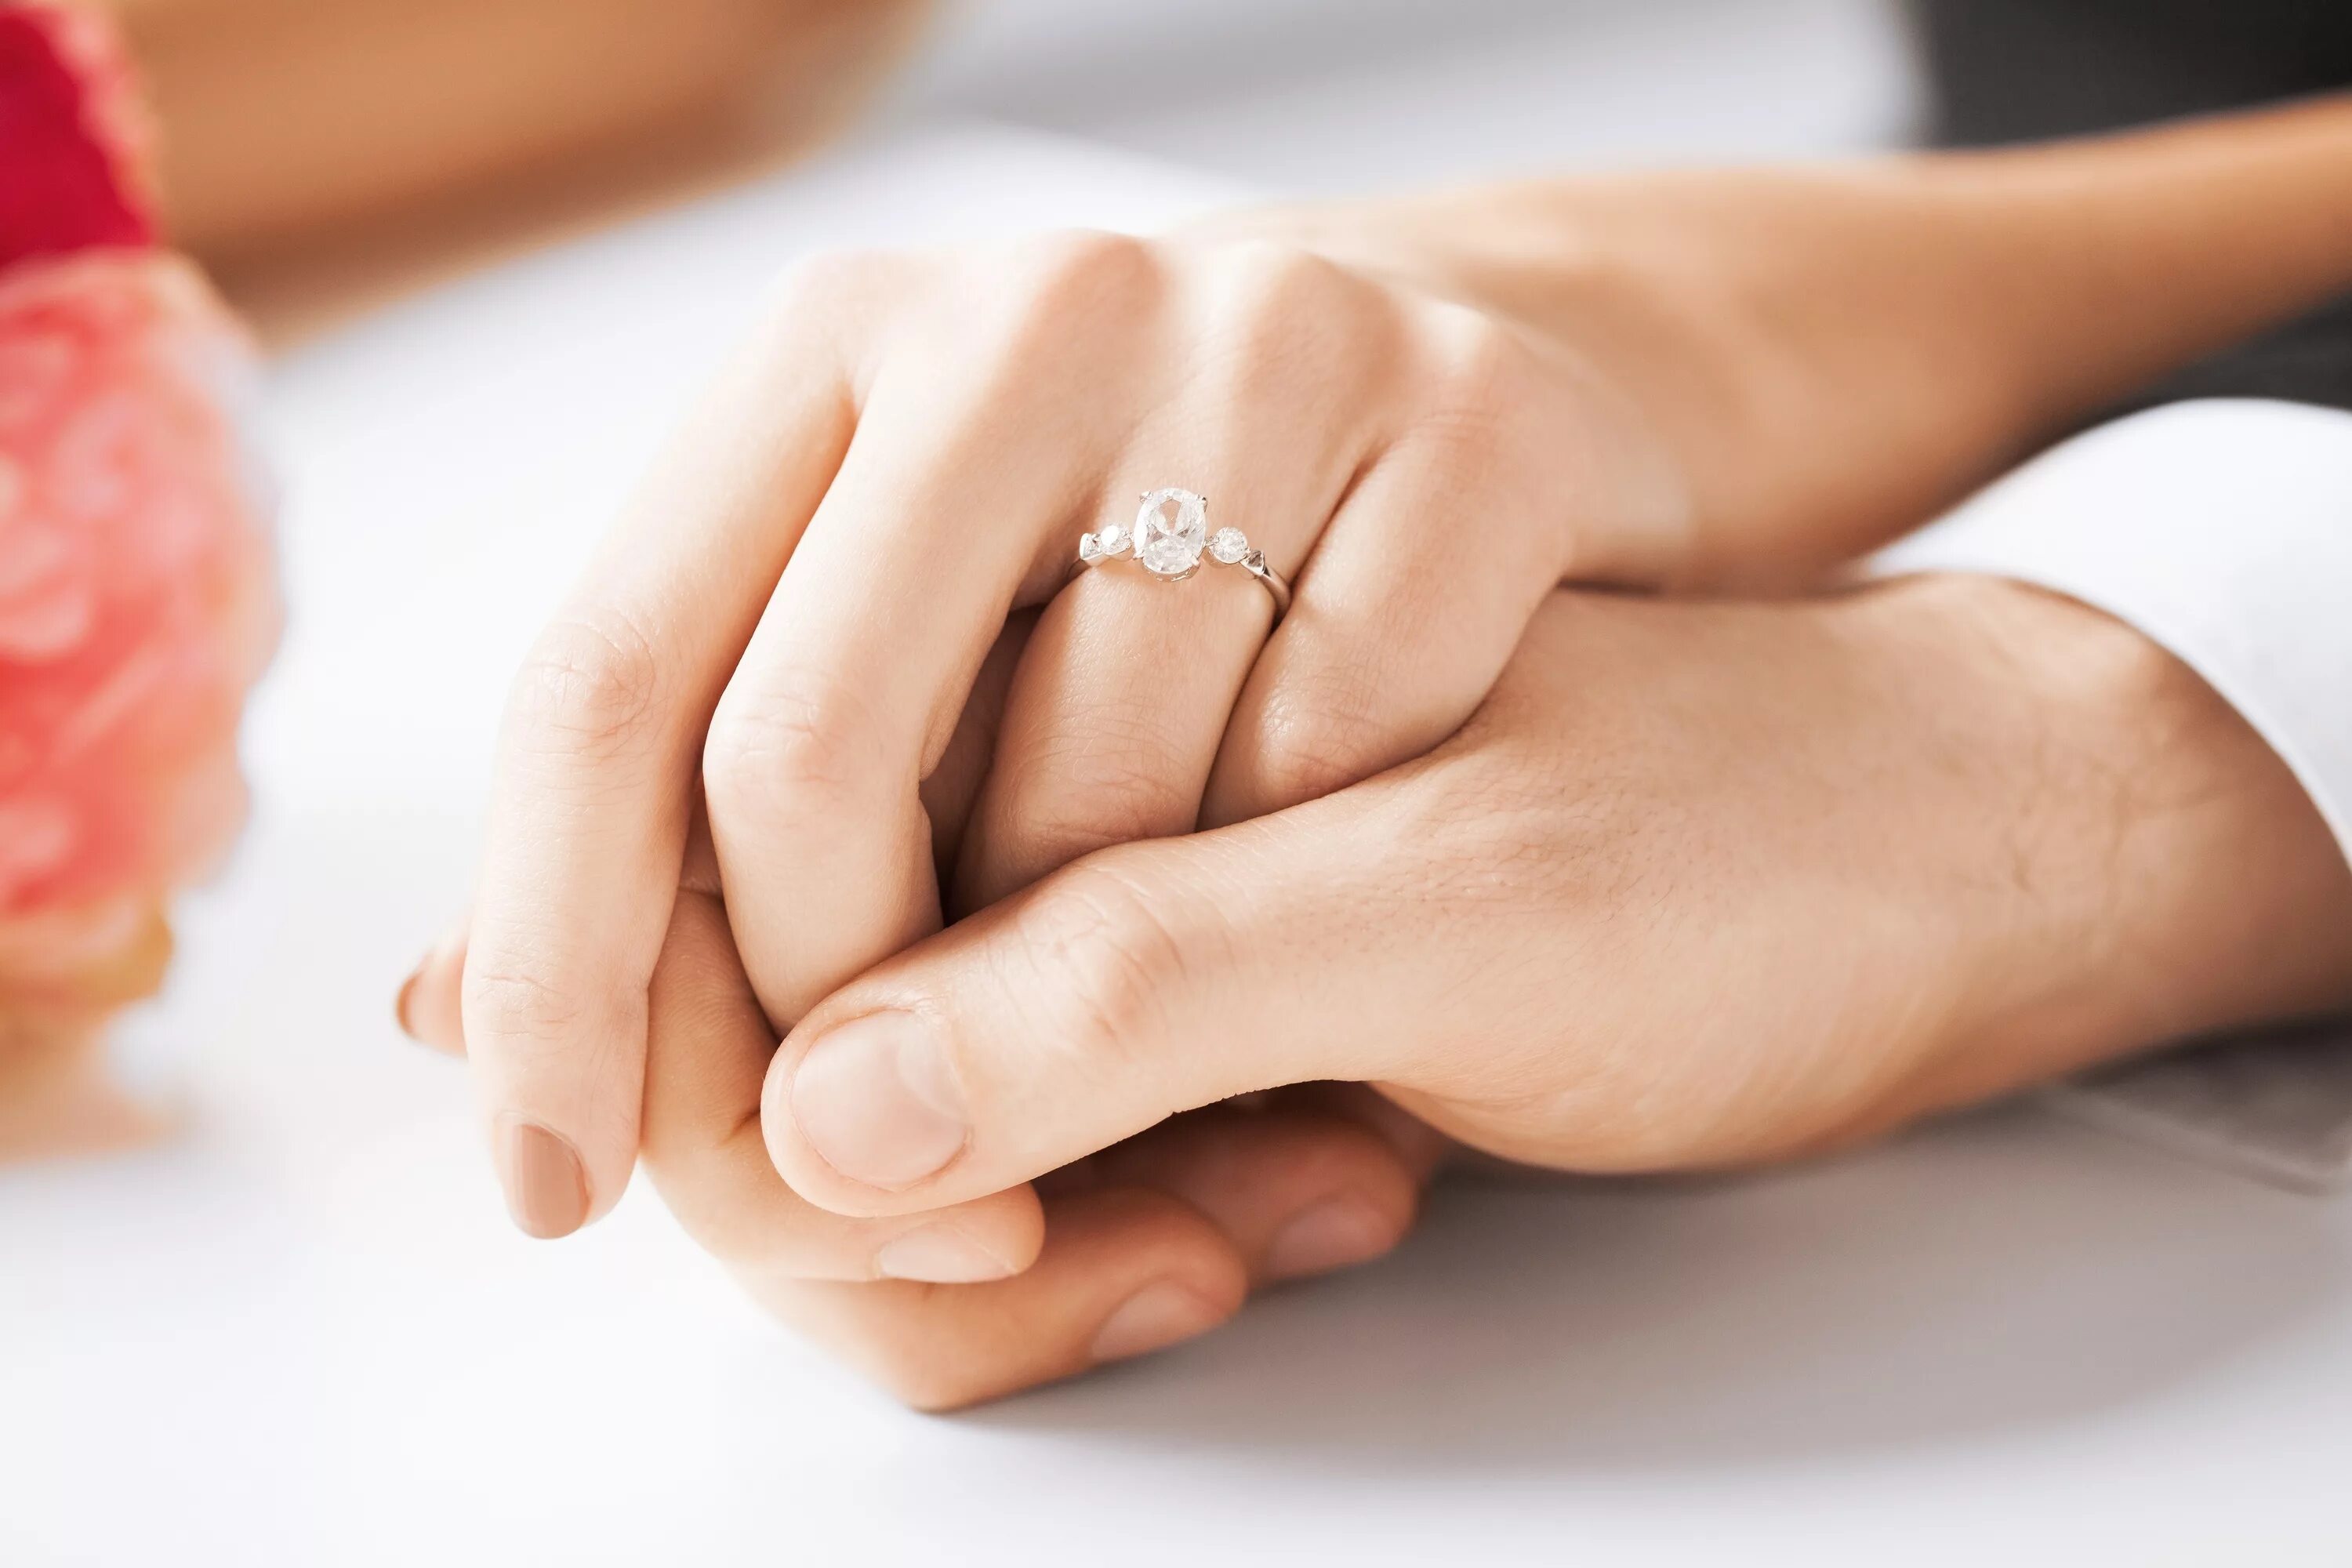 Кольцо замужества. Свадебные кольца на руках. Помолвка. Руки влюбленных. Красивые обручальные кольца на руках.